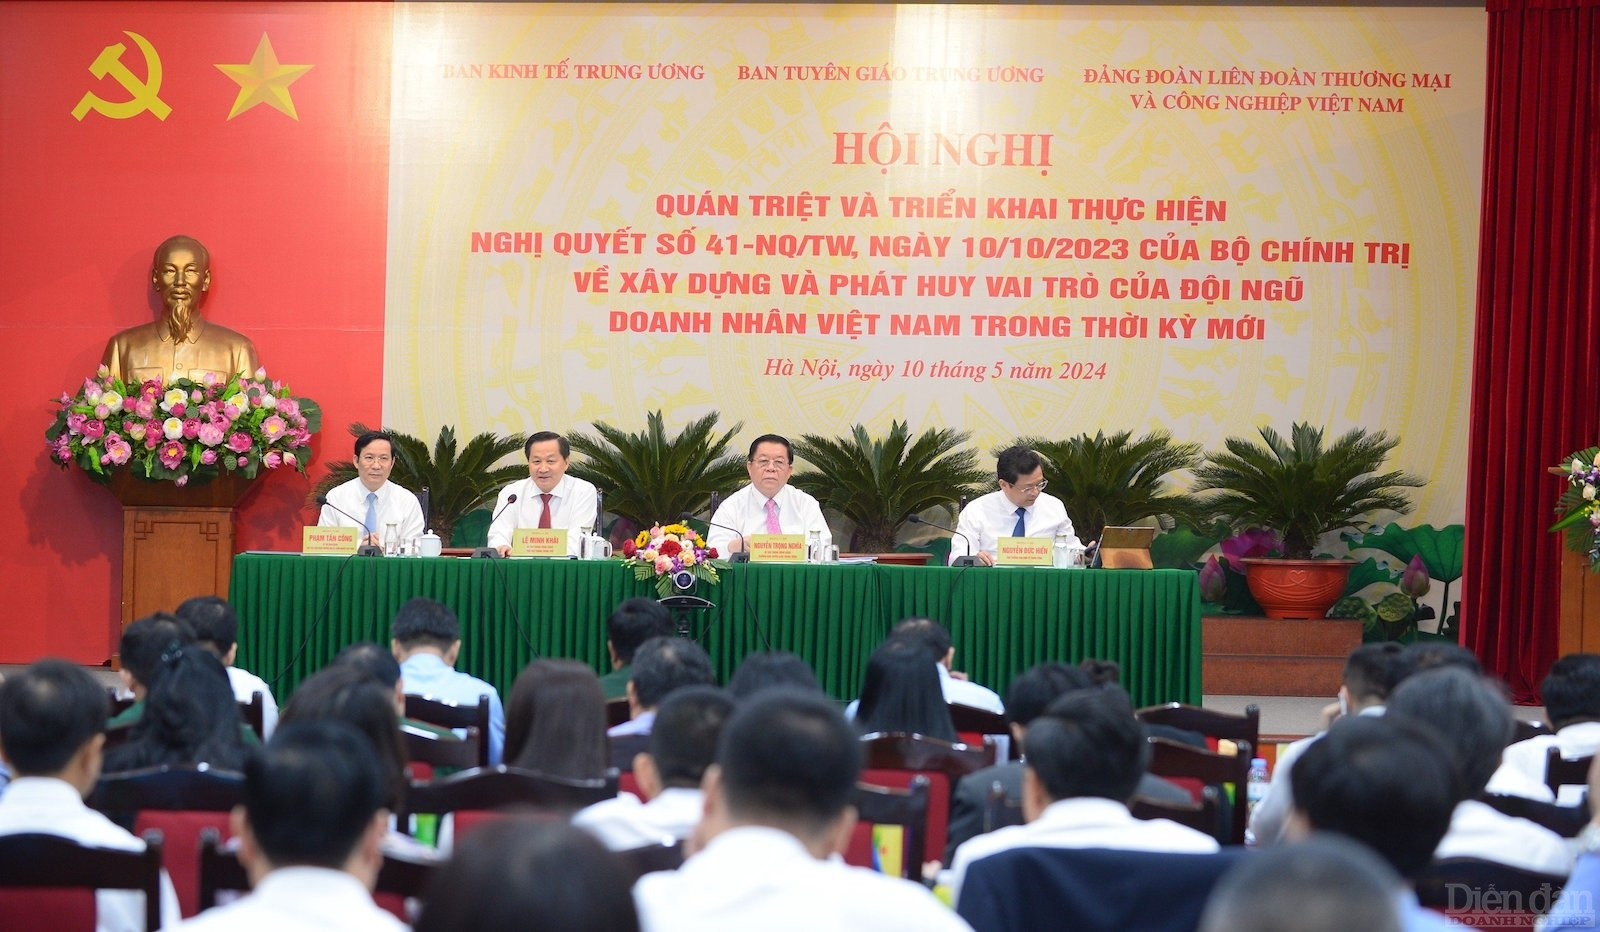 Hội nghị quán triệt, triển khai thực hiện Nghị quyết số 41-NQ/TW ngày 10-10-2023 của Bộ Chính trị về xây dựng và phát huy vai trò của đội ngũ Doanh nhân Việt Nam